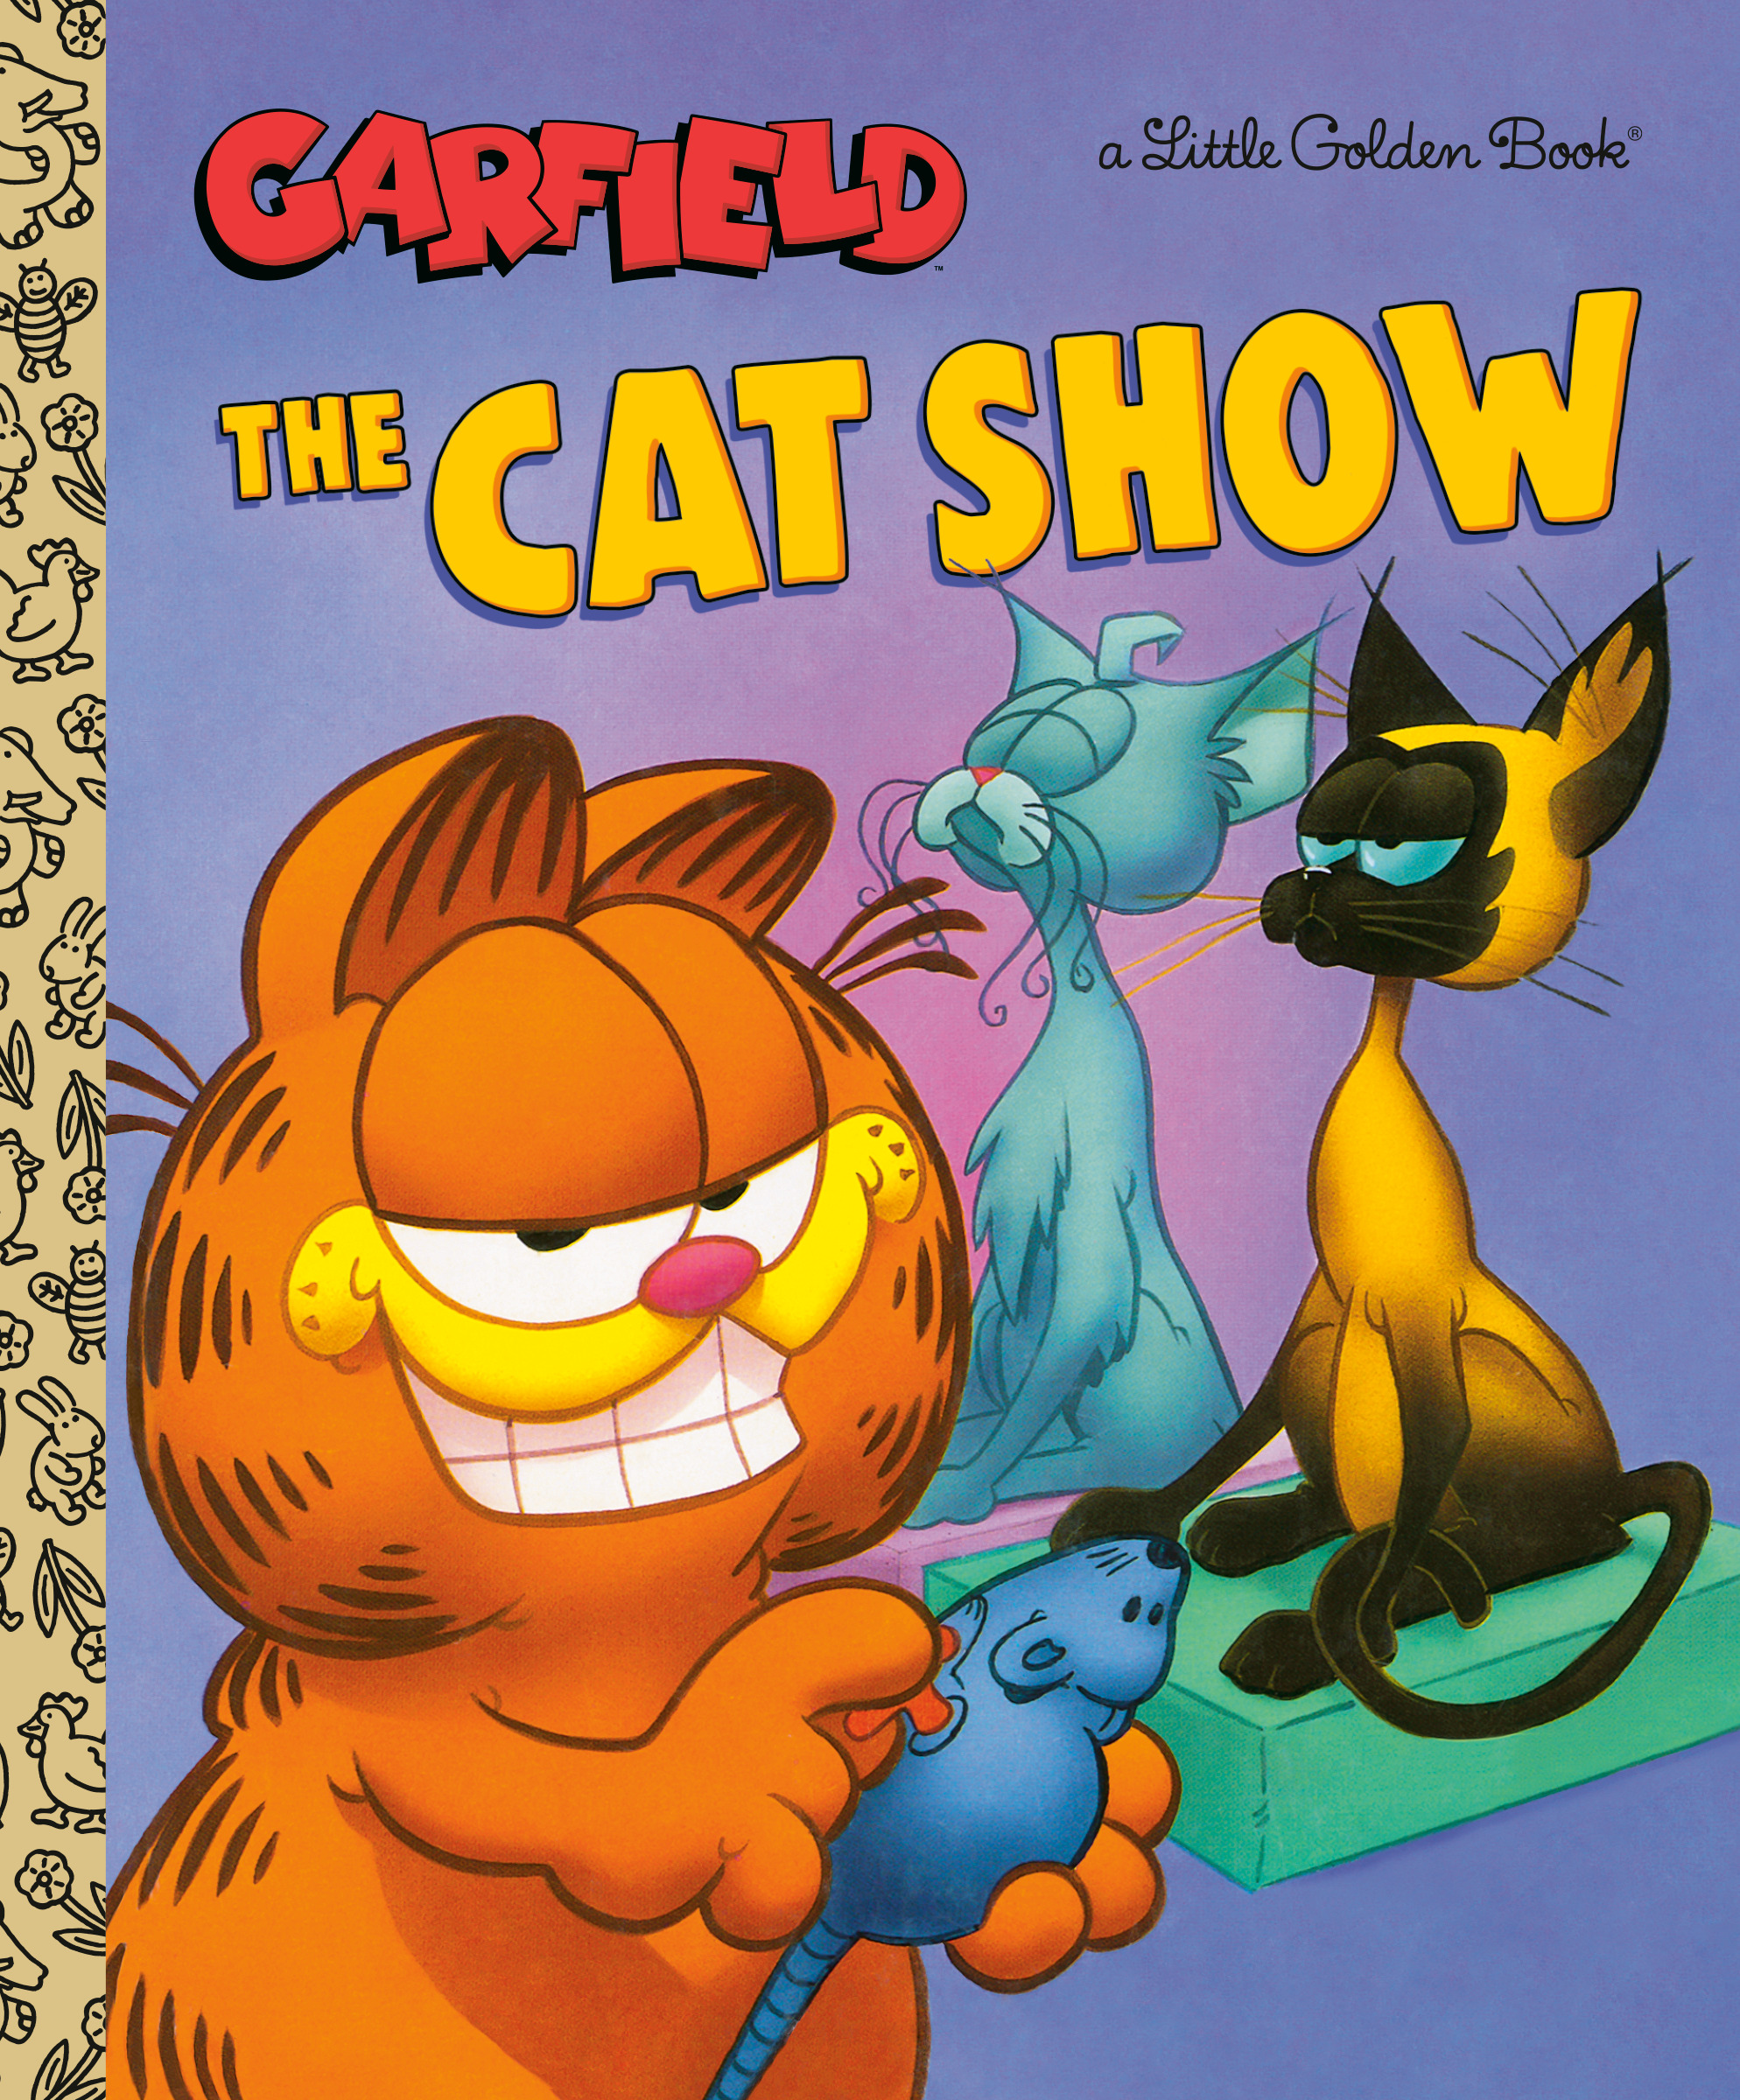 The Cat Show (Garfield) | First reader